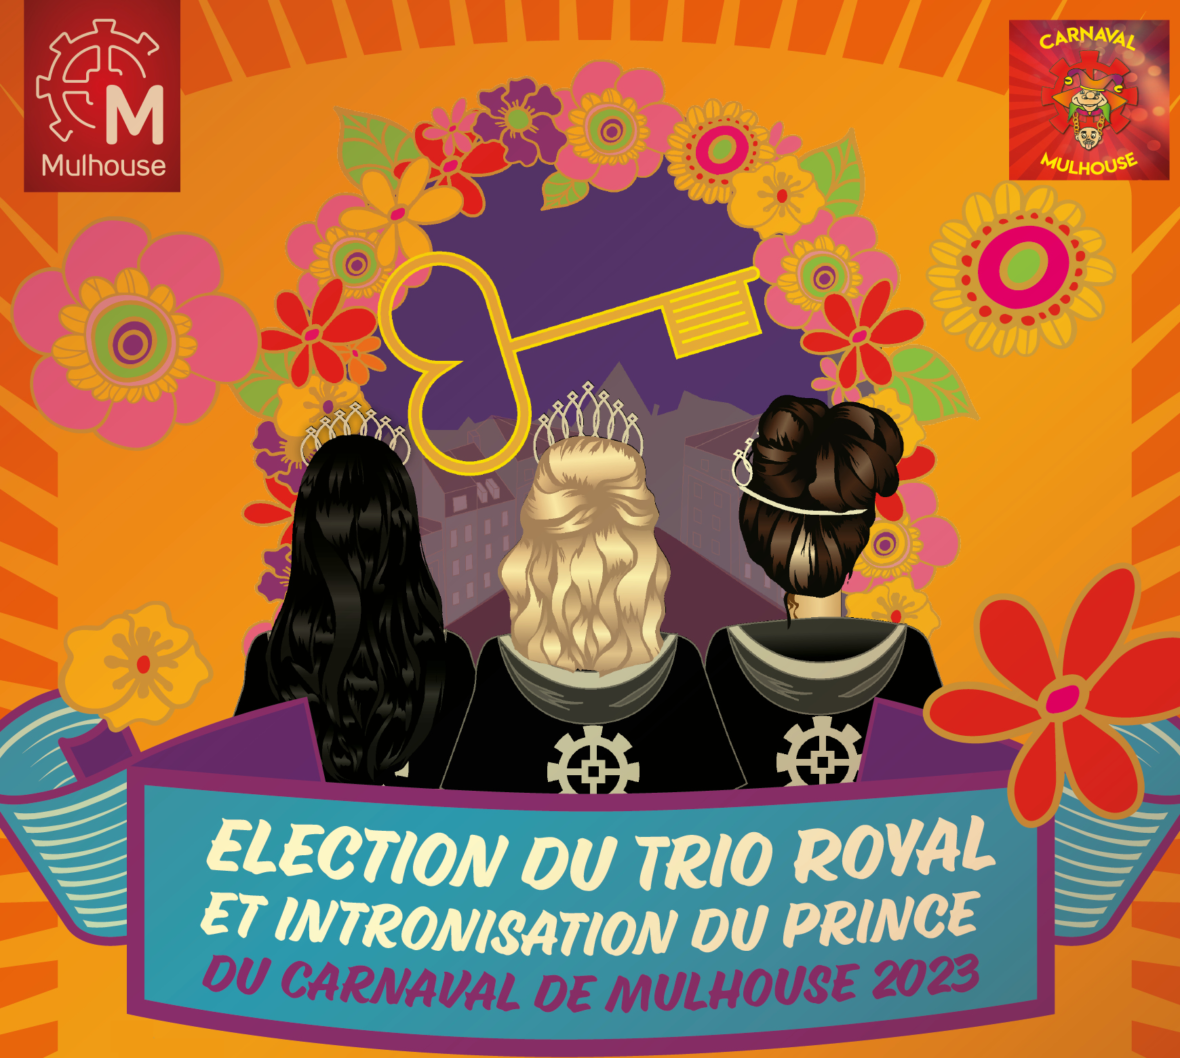 Election du Trio royal et intronisation du Prince du Carnaval de Mulhouse 2023